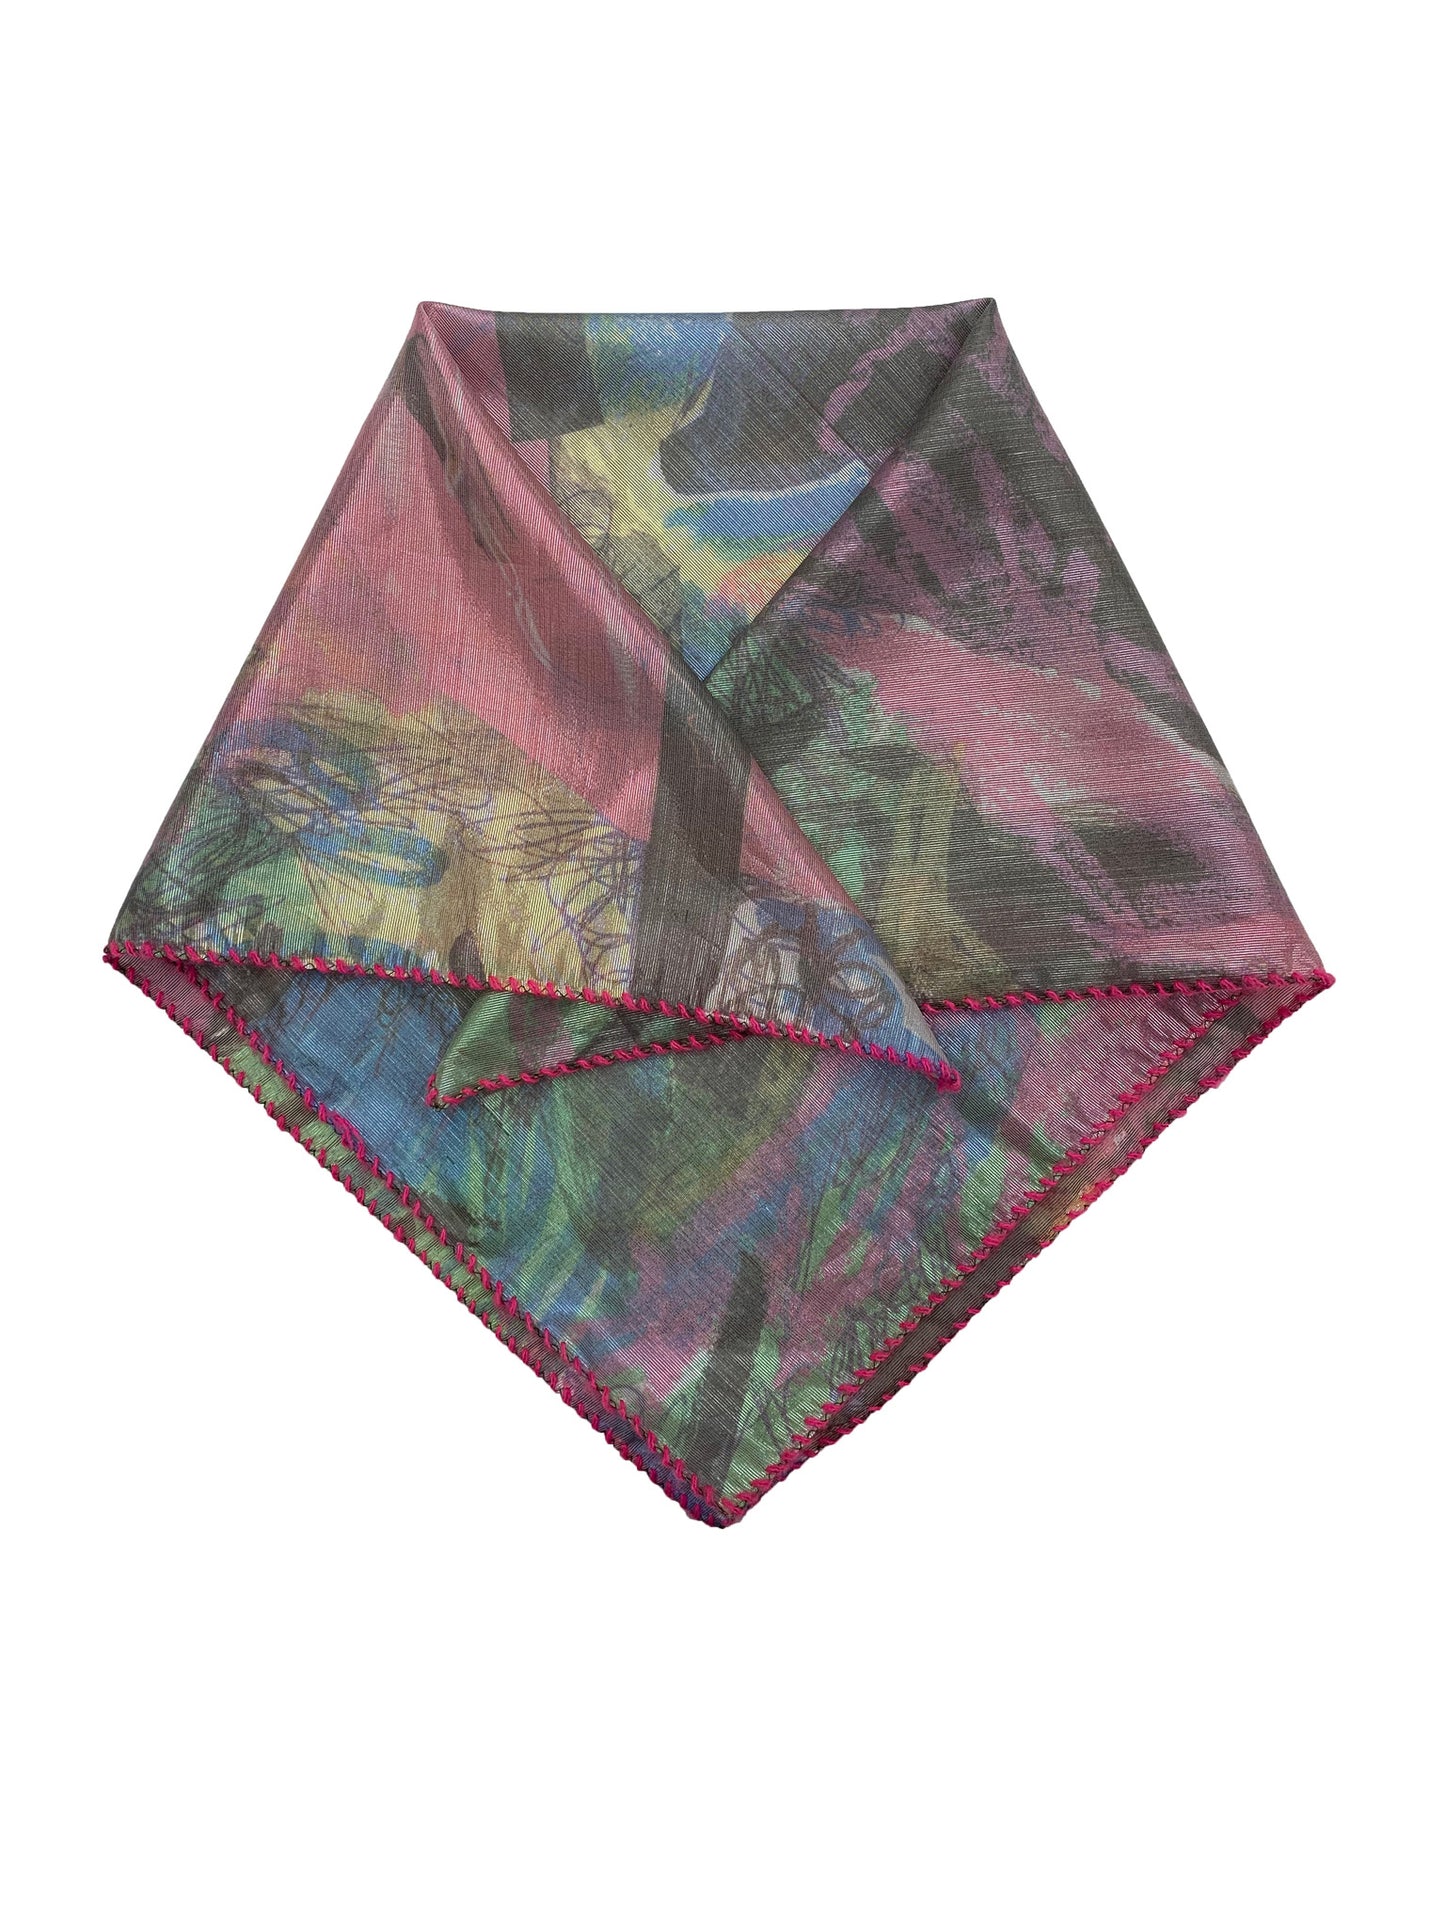 TATI scarf silk/lurex mix / Made-to-order